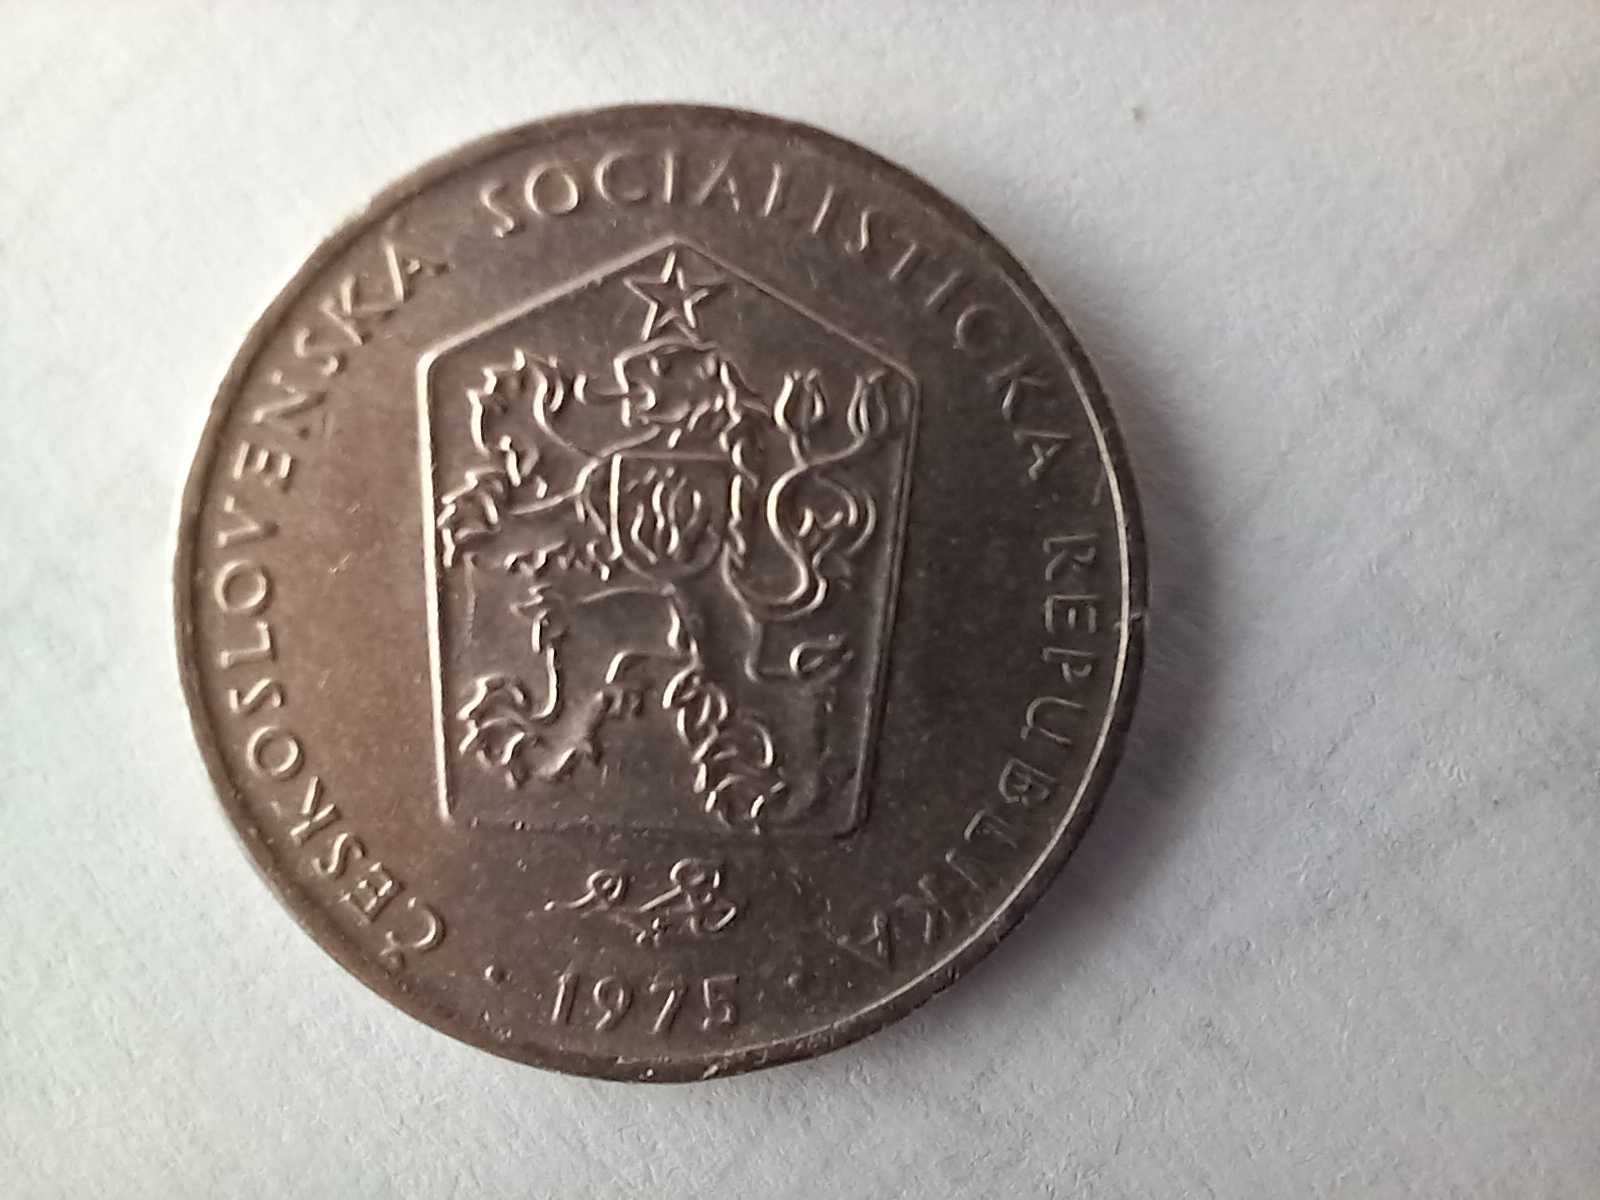 Moneta Czechosłowacja - 2 korony 1975 /7/